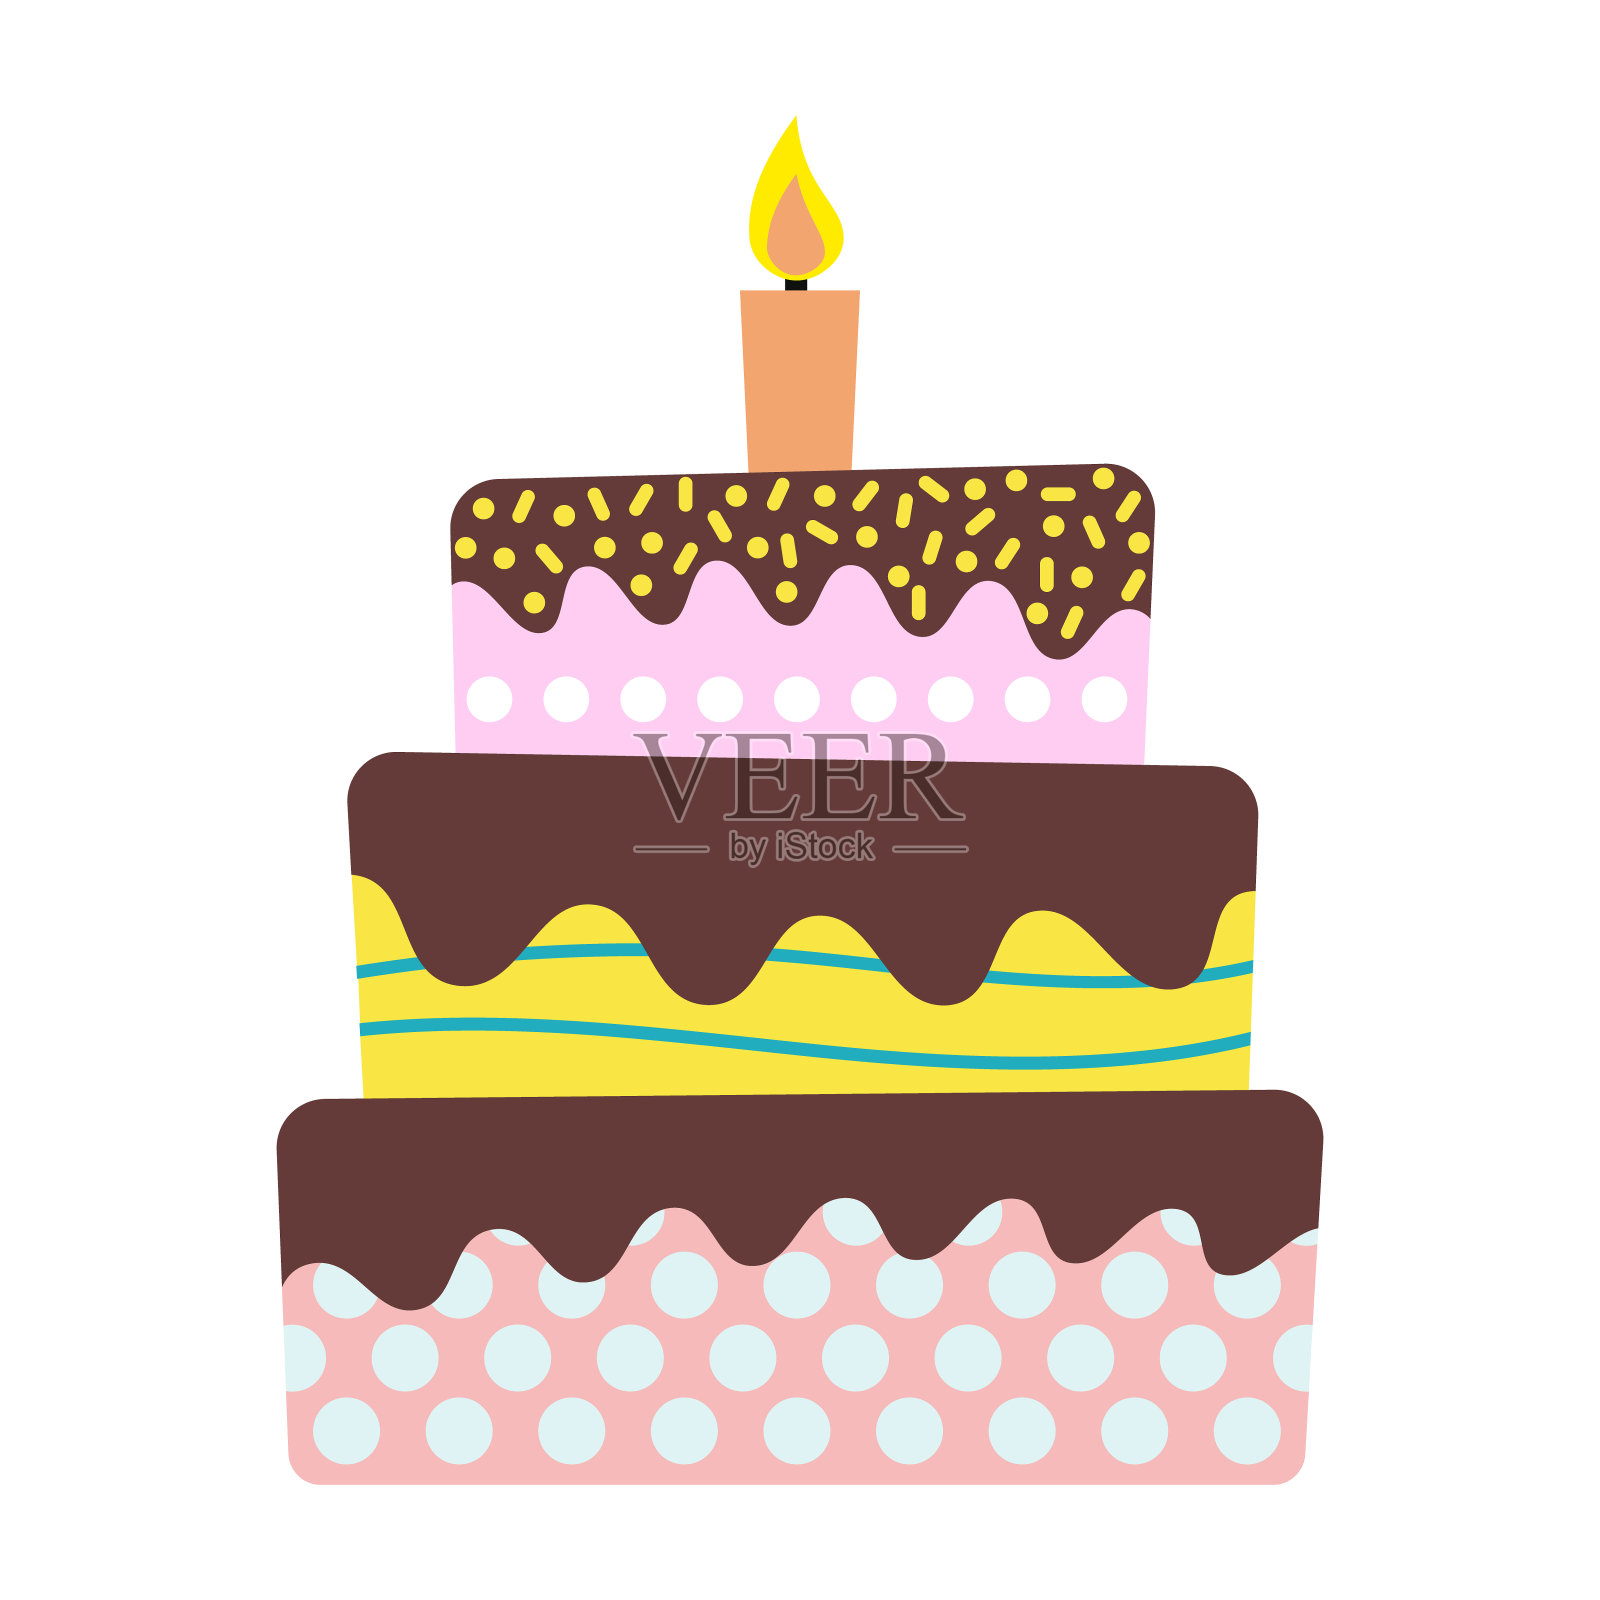 甜蜜的生日蛋糕和燃烧的蜡烛插画图片素材